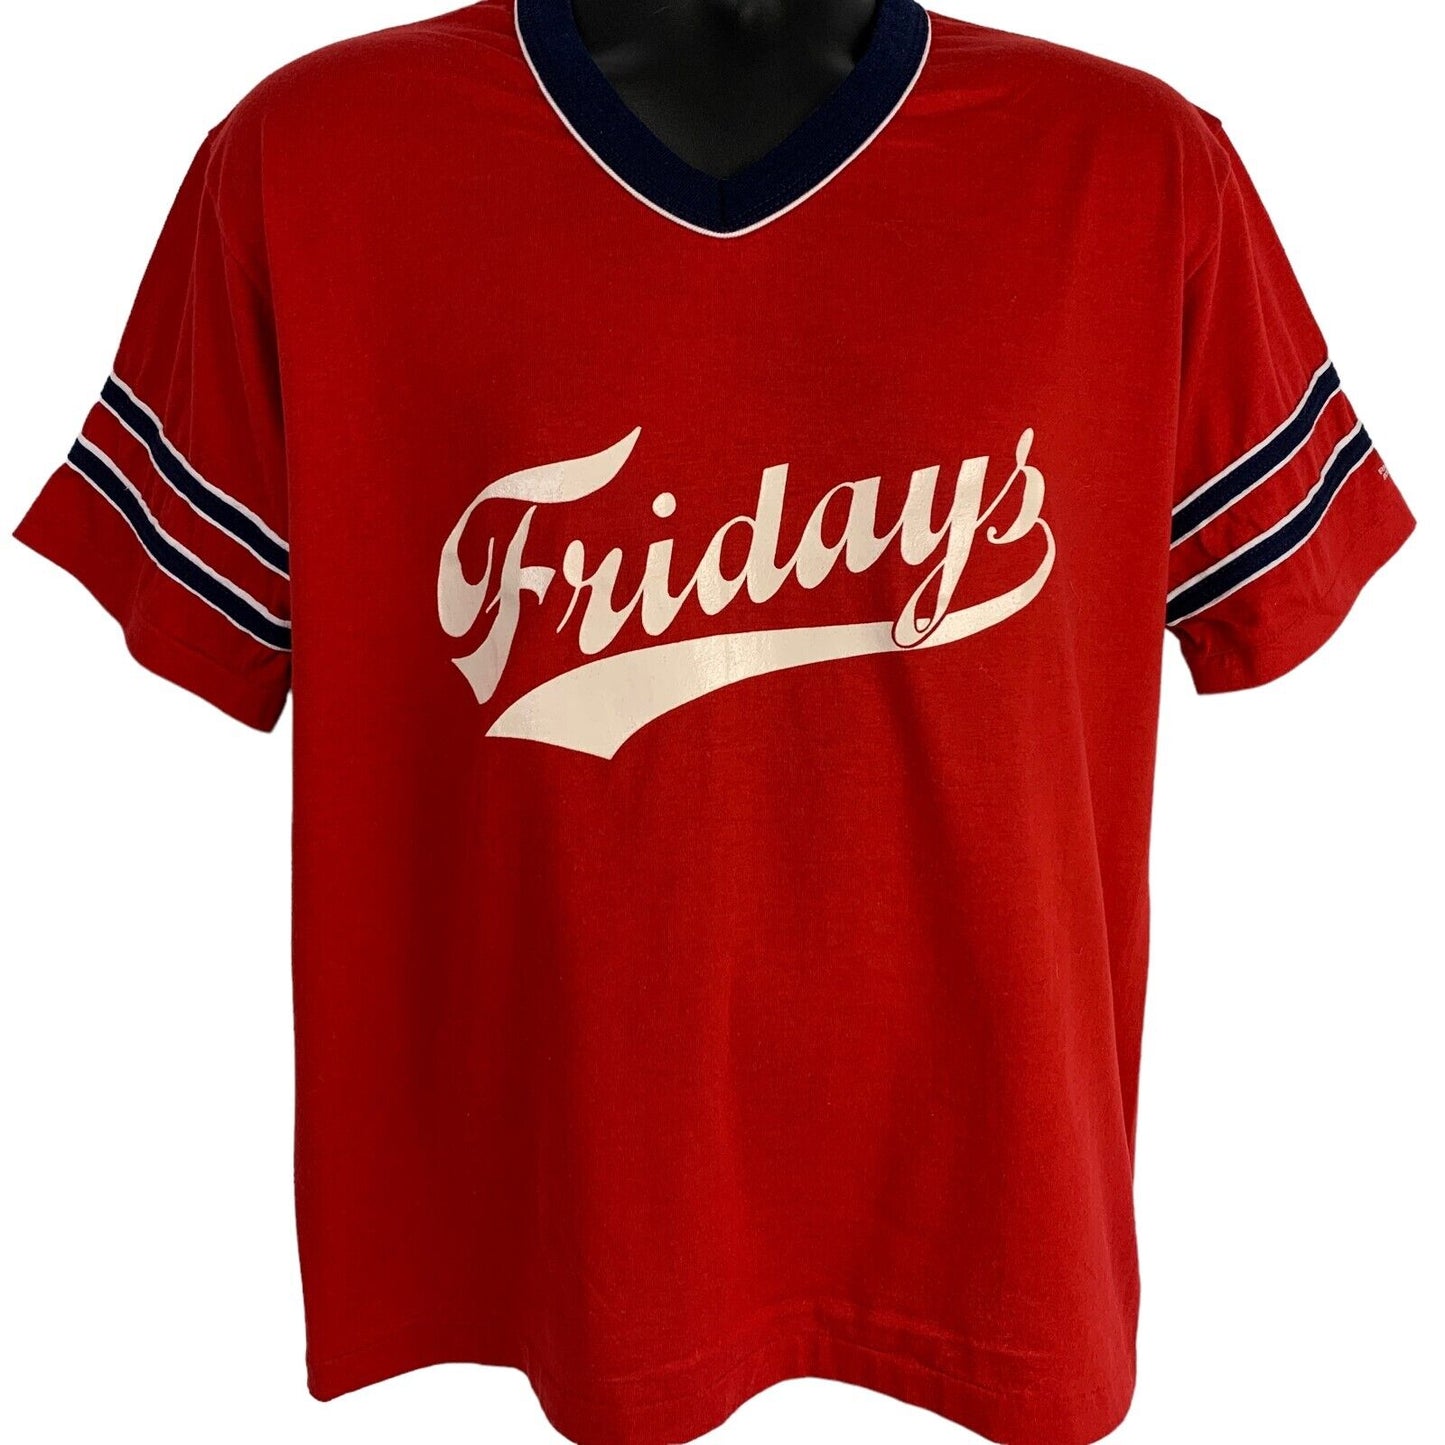 TGI Fridays 23 Vintage 80s Ringer Camiseta Softbol Béisbol Hecho en EE.UU. Grande